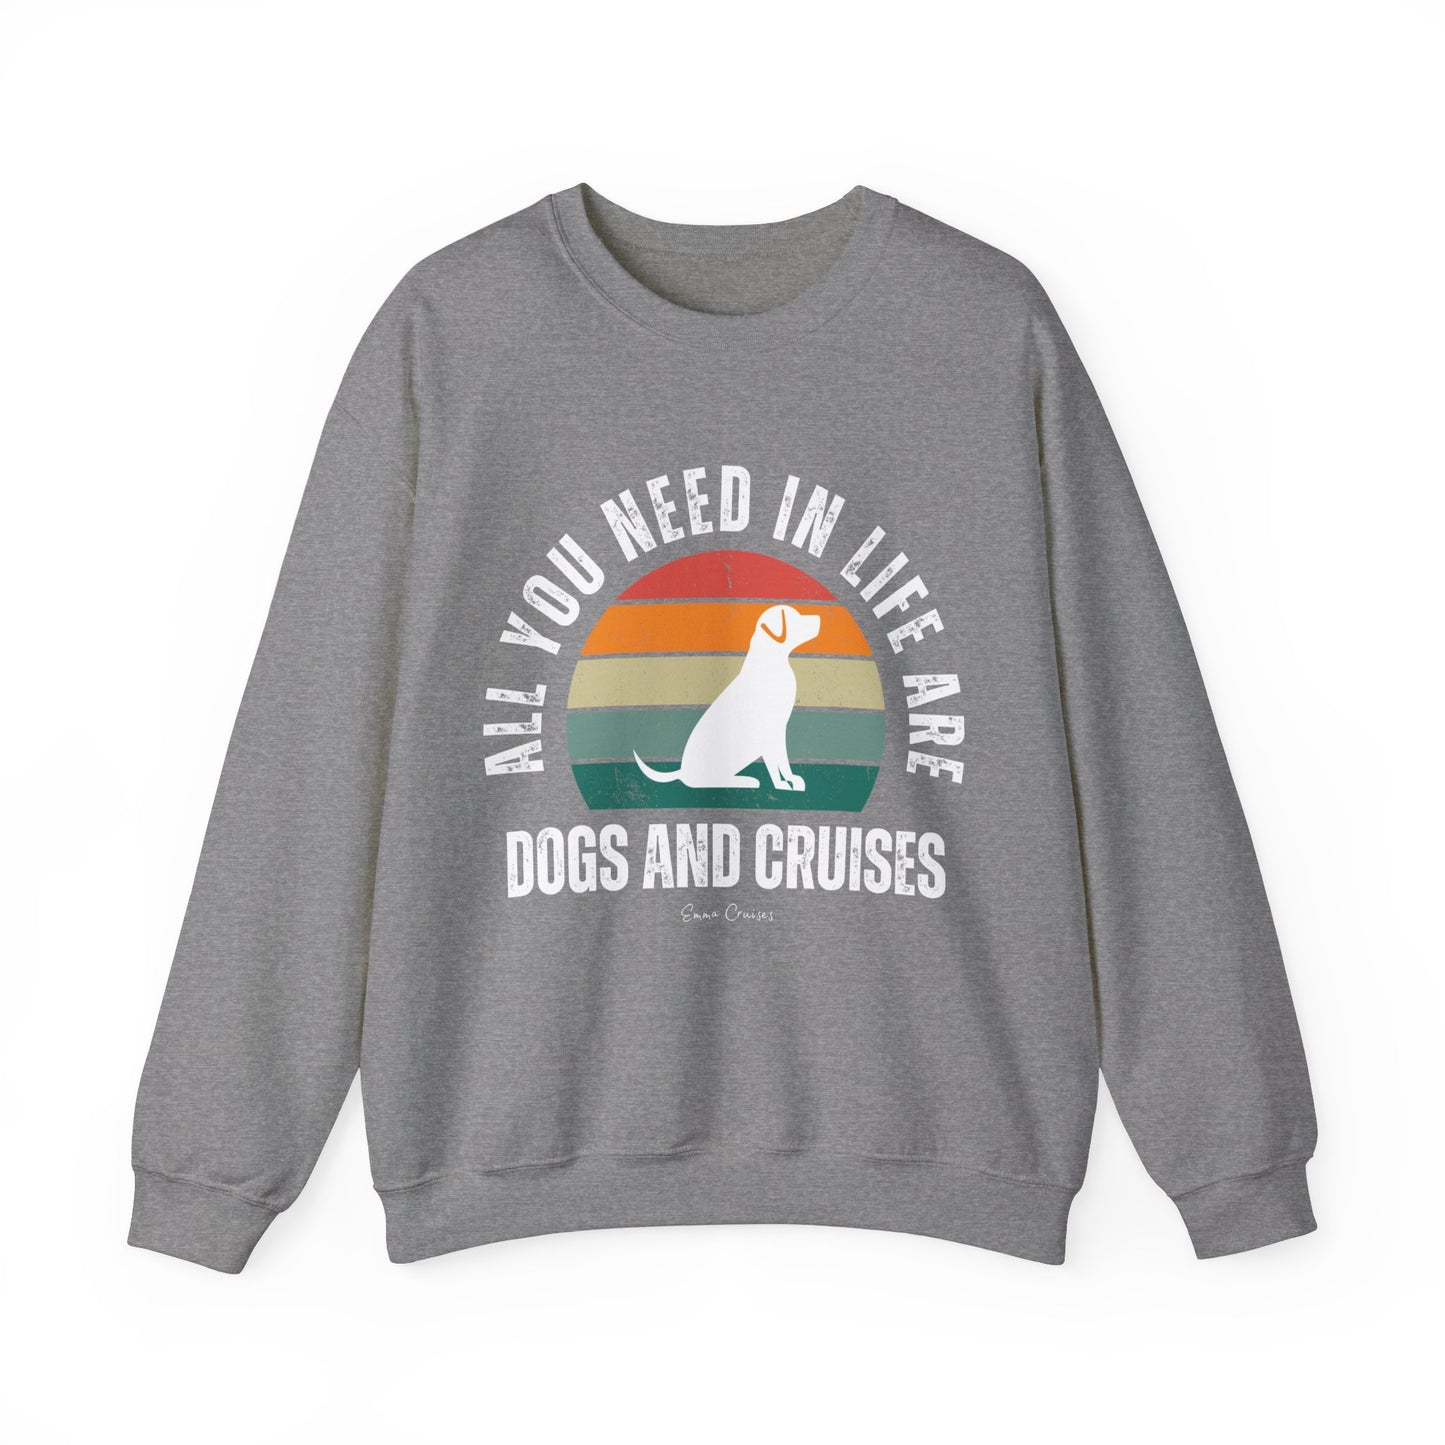 Dogs and Cruises - UNISEX Crewneck Sweatshirt